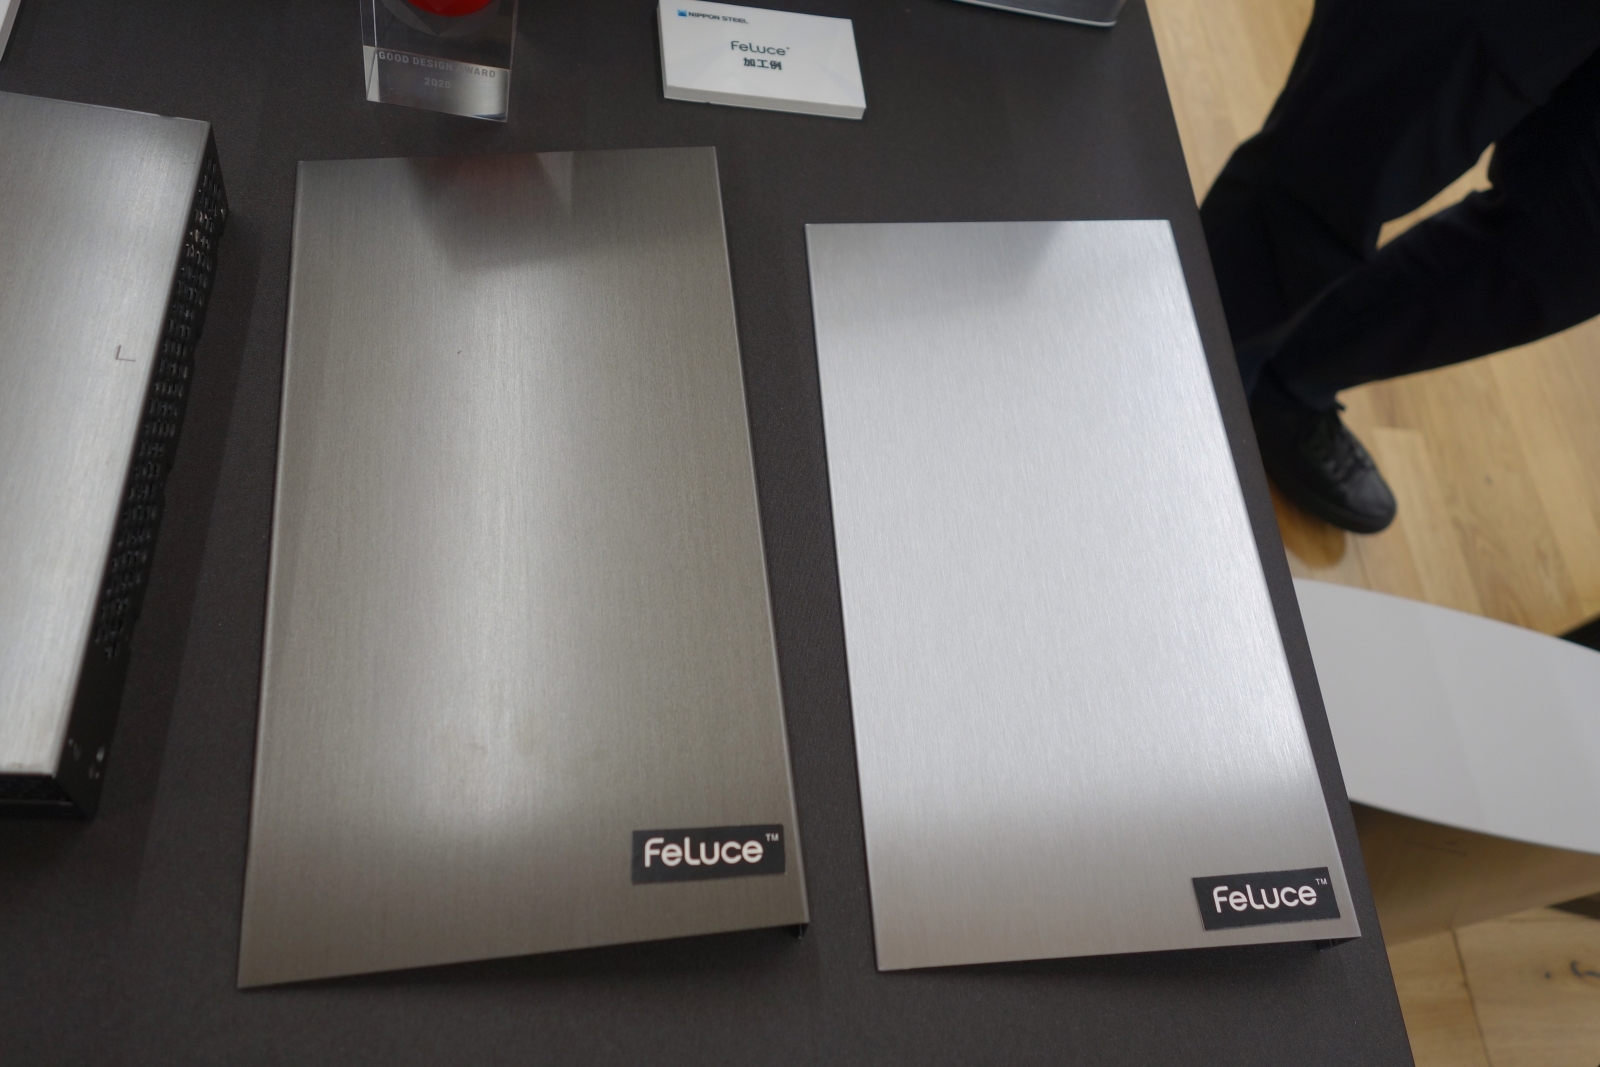 日本製鉄の電気めっき鋼板「FeLuce」 めっき層にヘアライン加工を施してある。安価な鋼板を使って高級感を演出できる。（写真：日経クロステック）